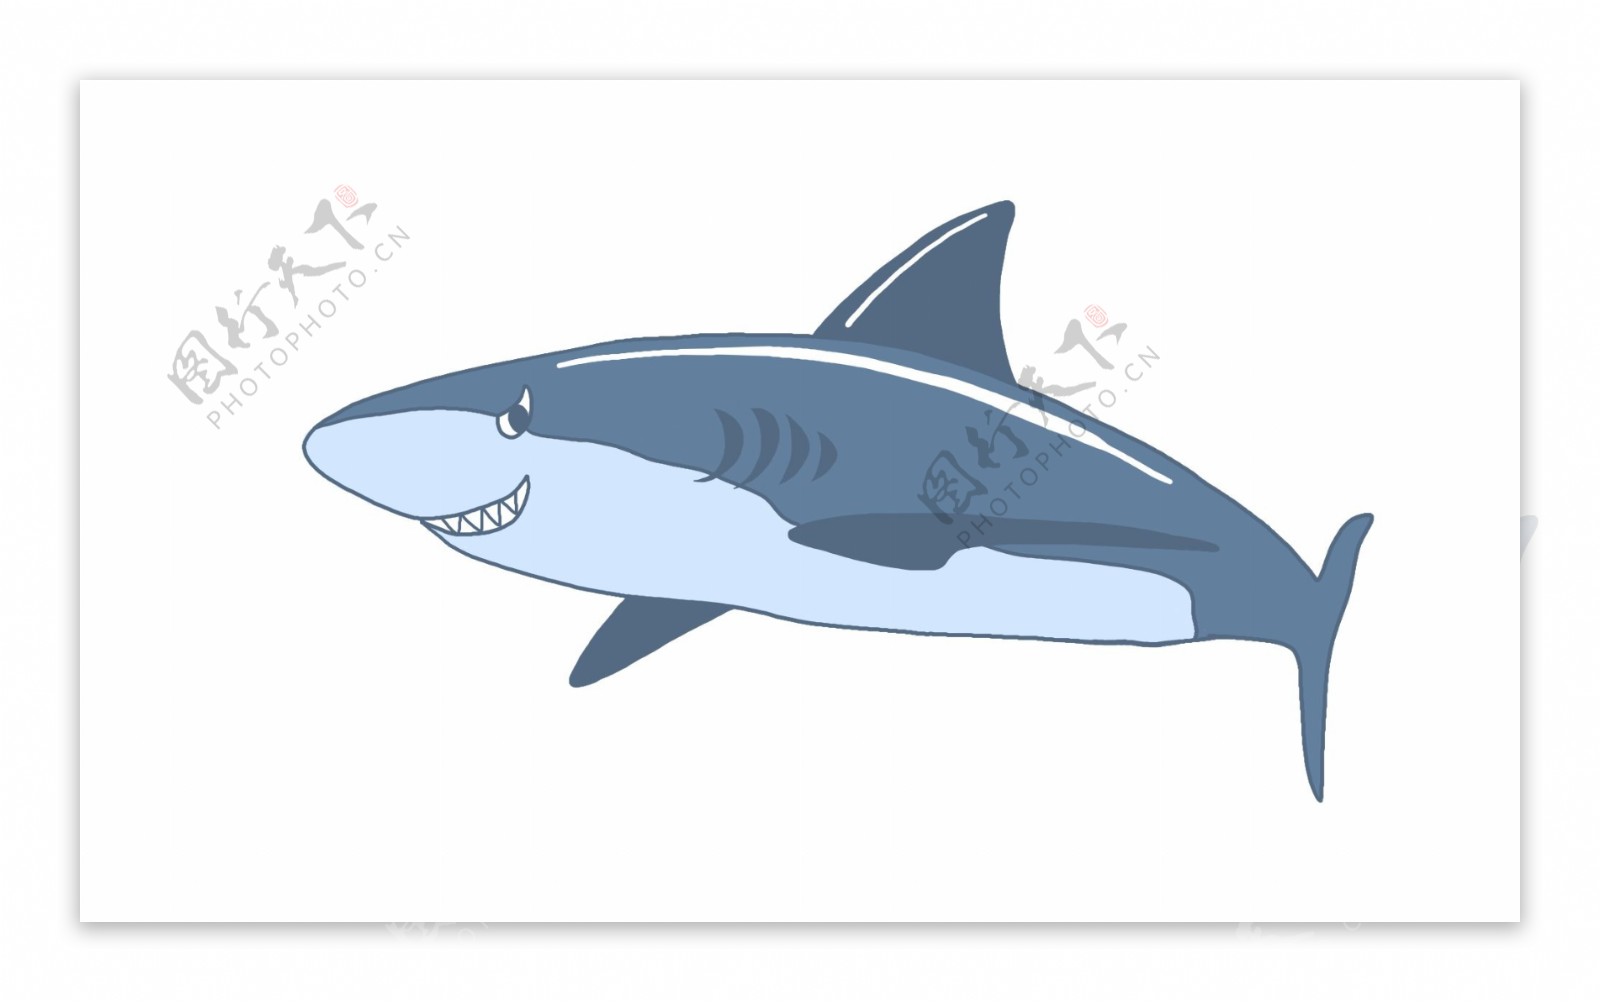 凶猛蓝色鲸鱼生物